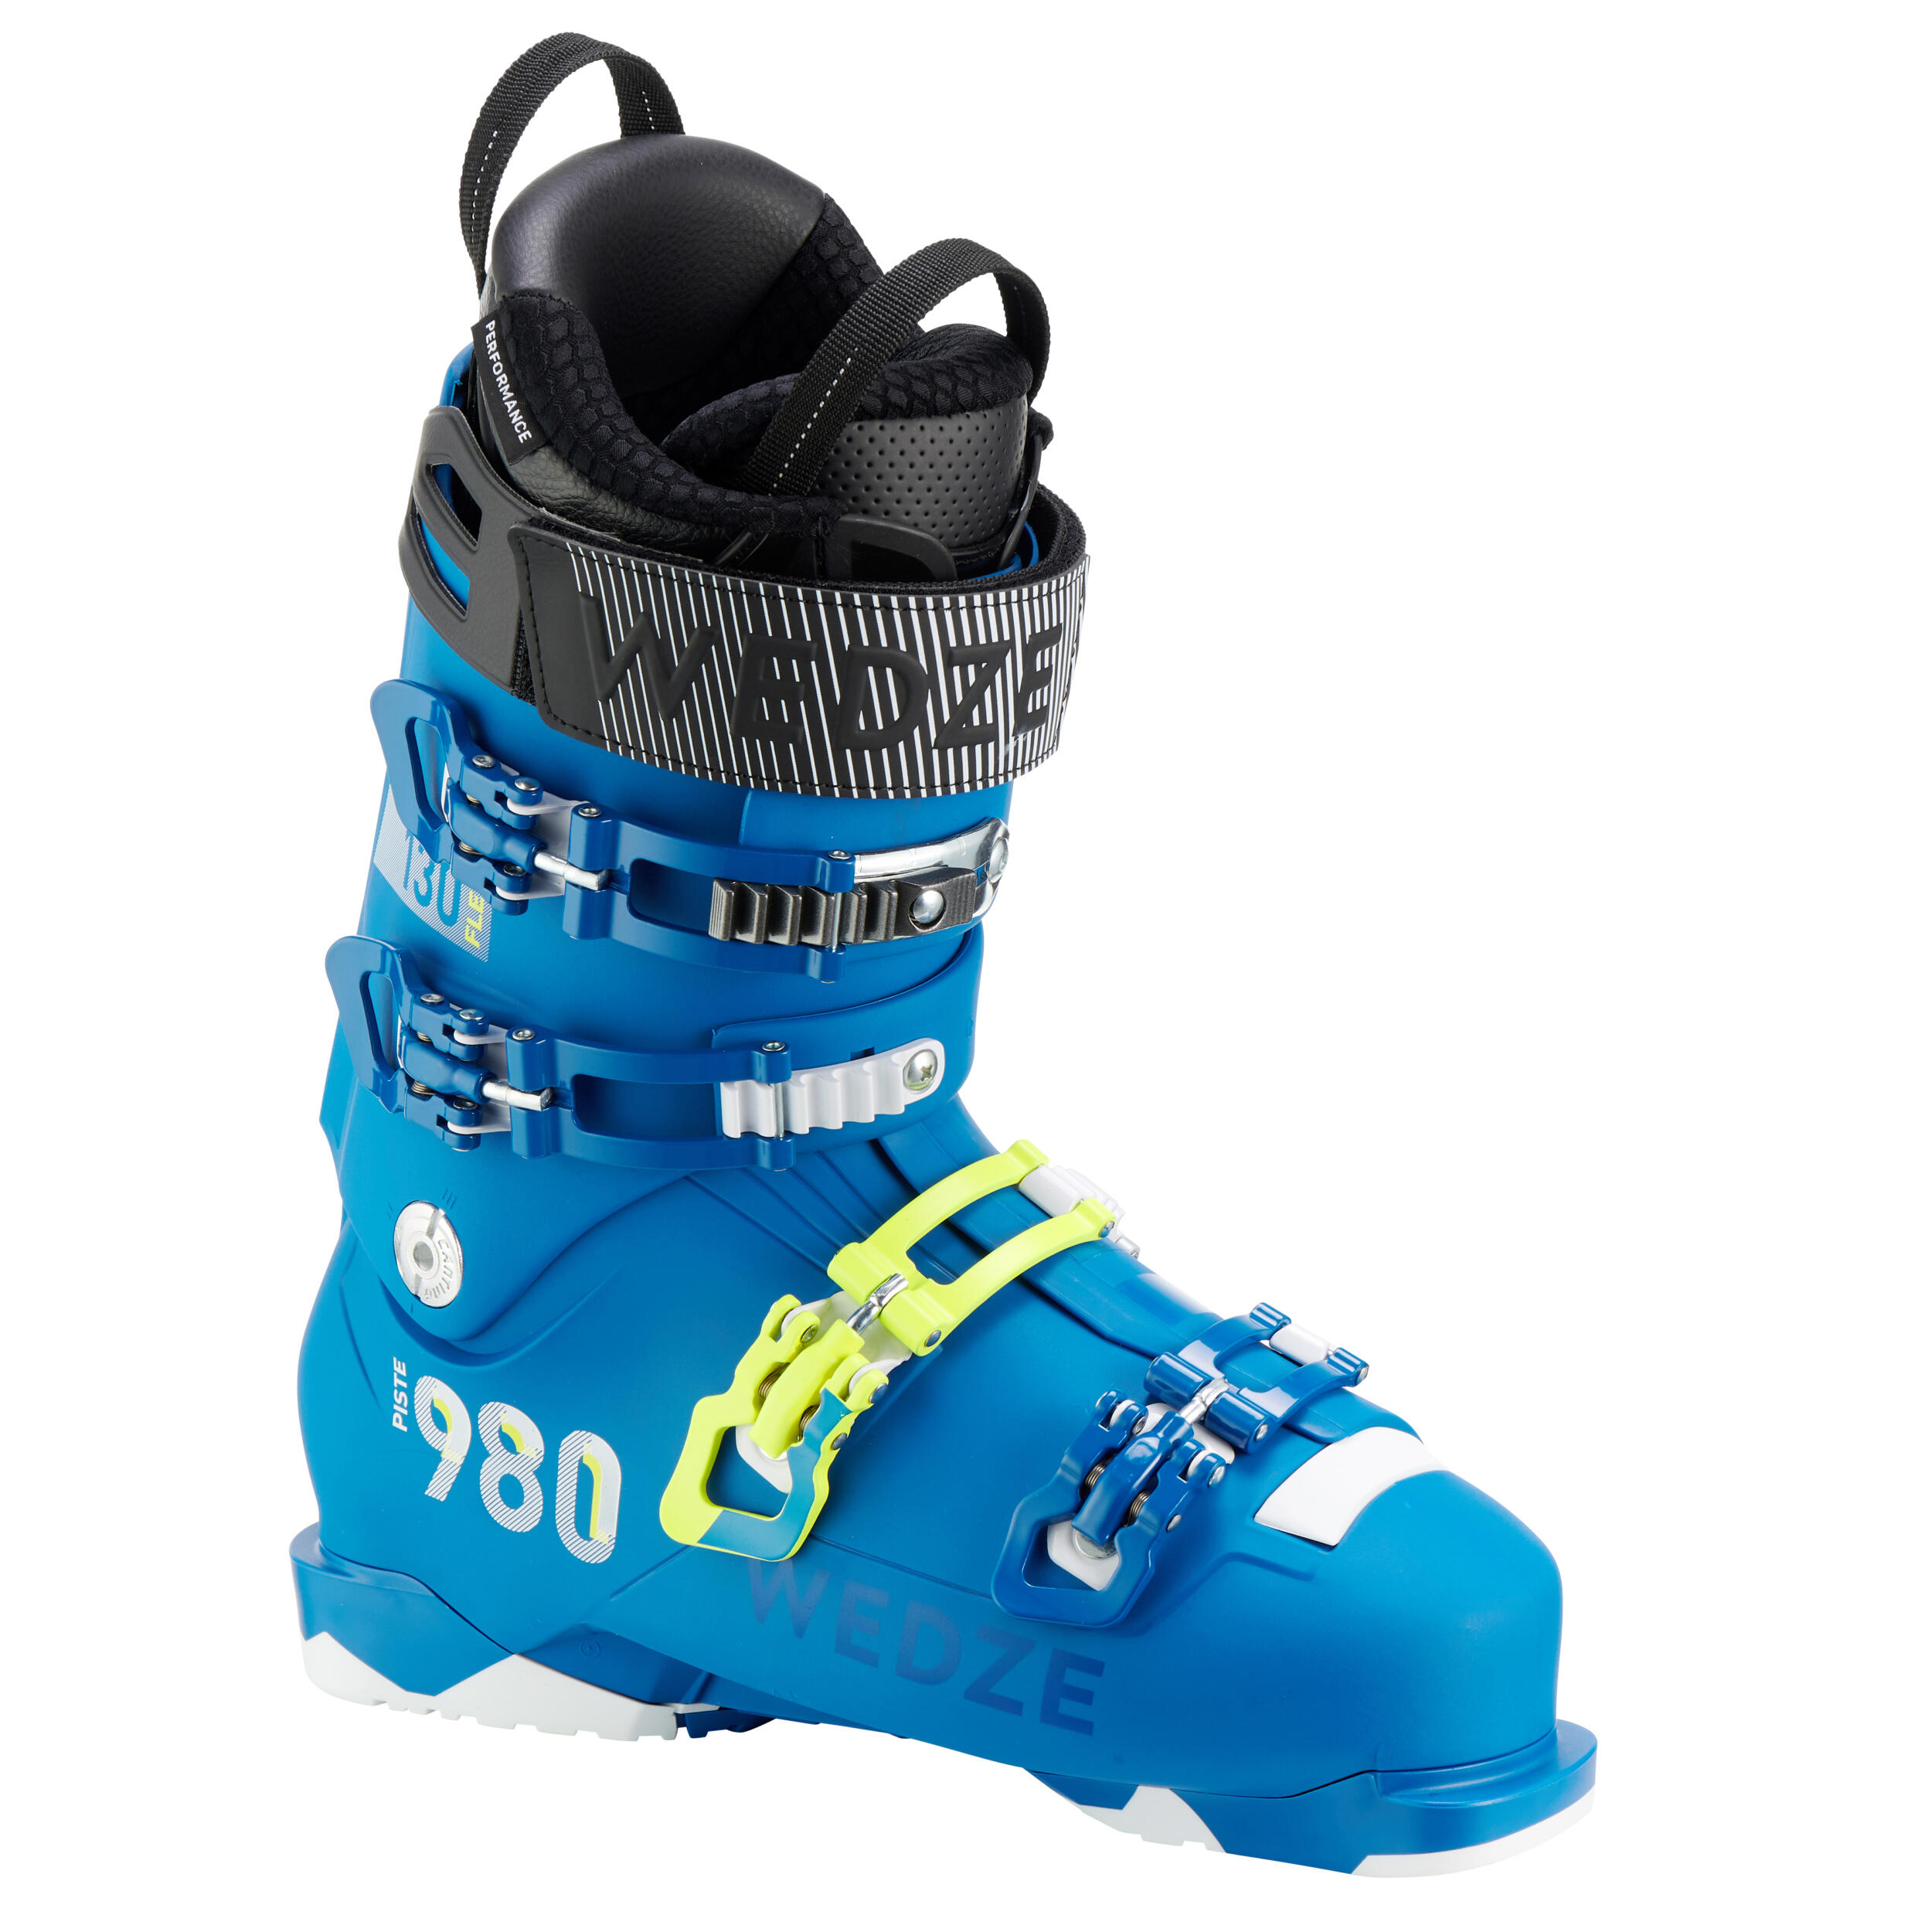 Men's Piste Ski Boots Fit 980 - Blue 